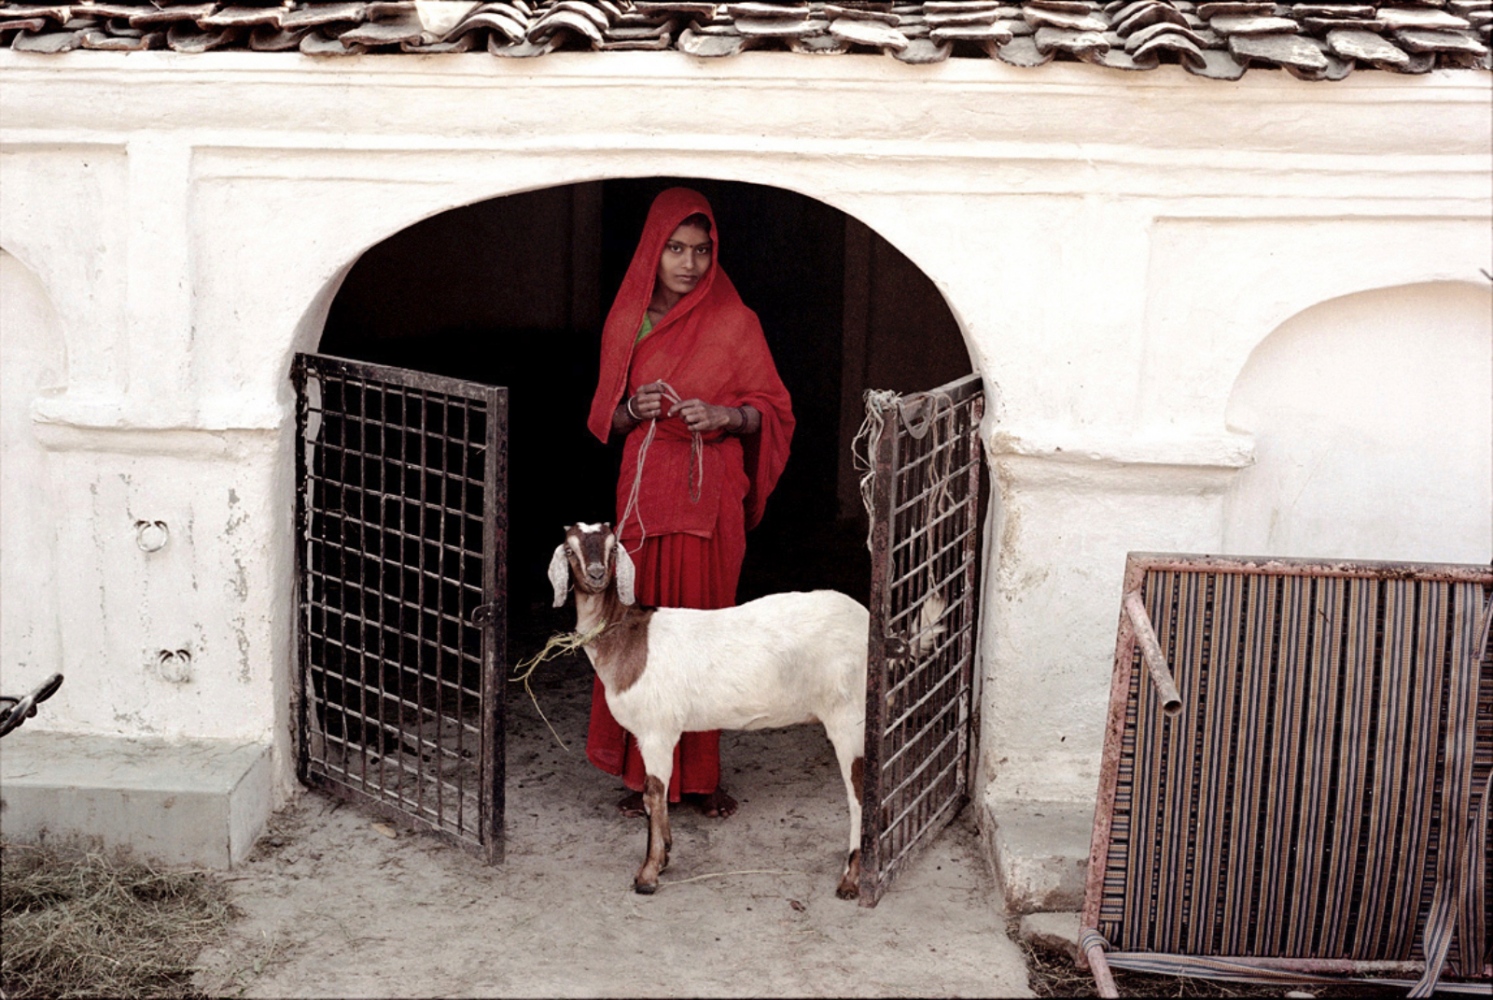 India -  Lady in Red, Khajuraho, India, November 2003   